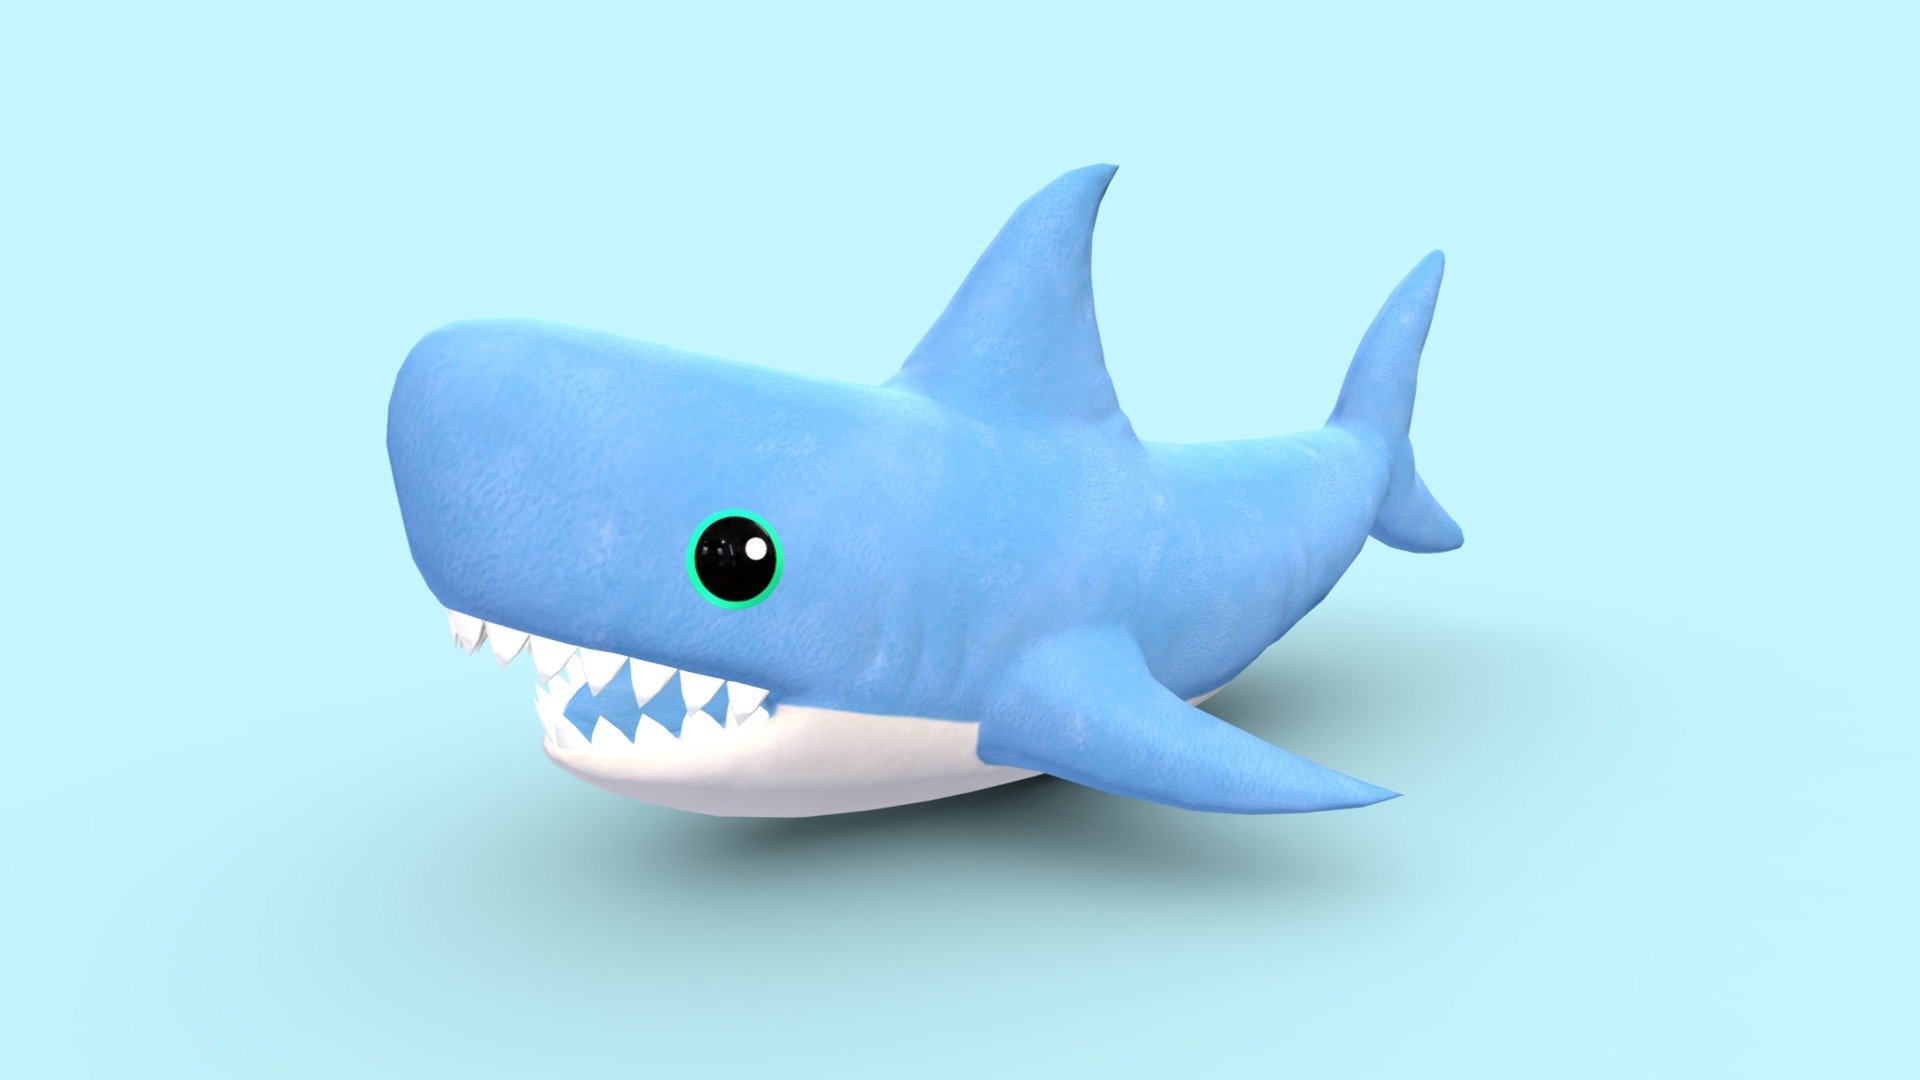 Shark Animation in Blender Part 05, Blender Tutorial for Beginners